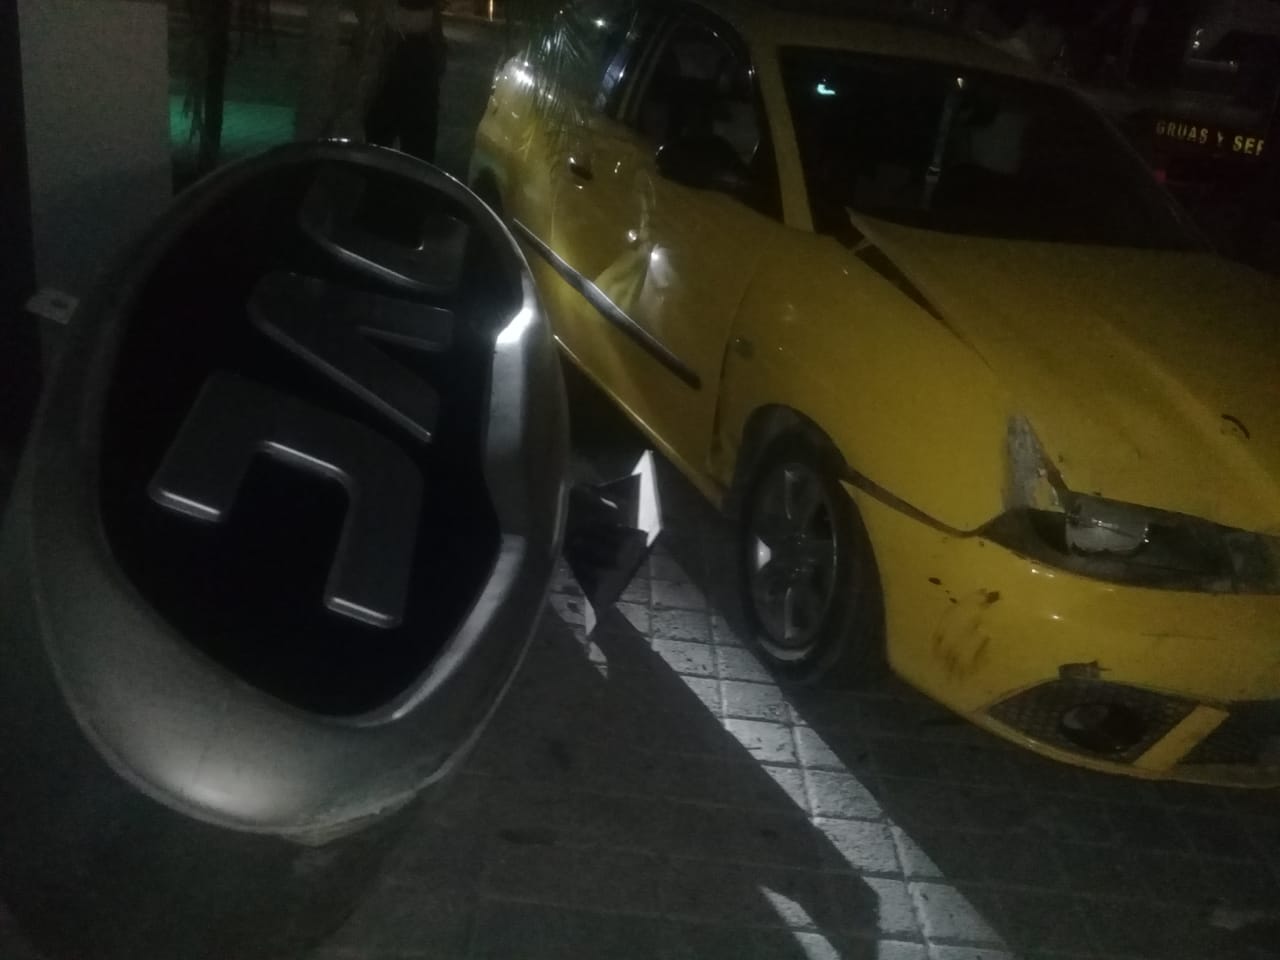 El vehículo finalmente se impactó contra dos automóviles estacionados en batería, un Tsuru blanco modelo 2001 y un Altima Guinda modelo 2015.

(EL SIGLO DE TORREÓN)